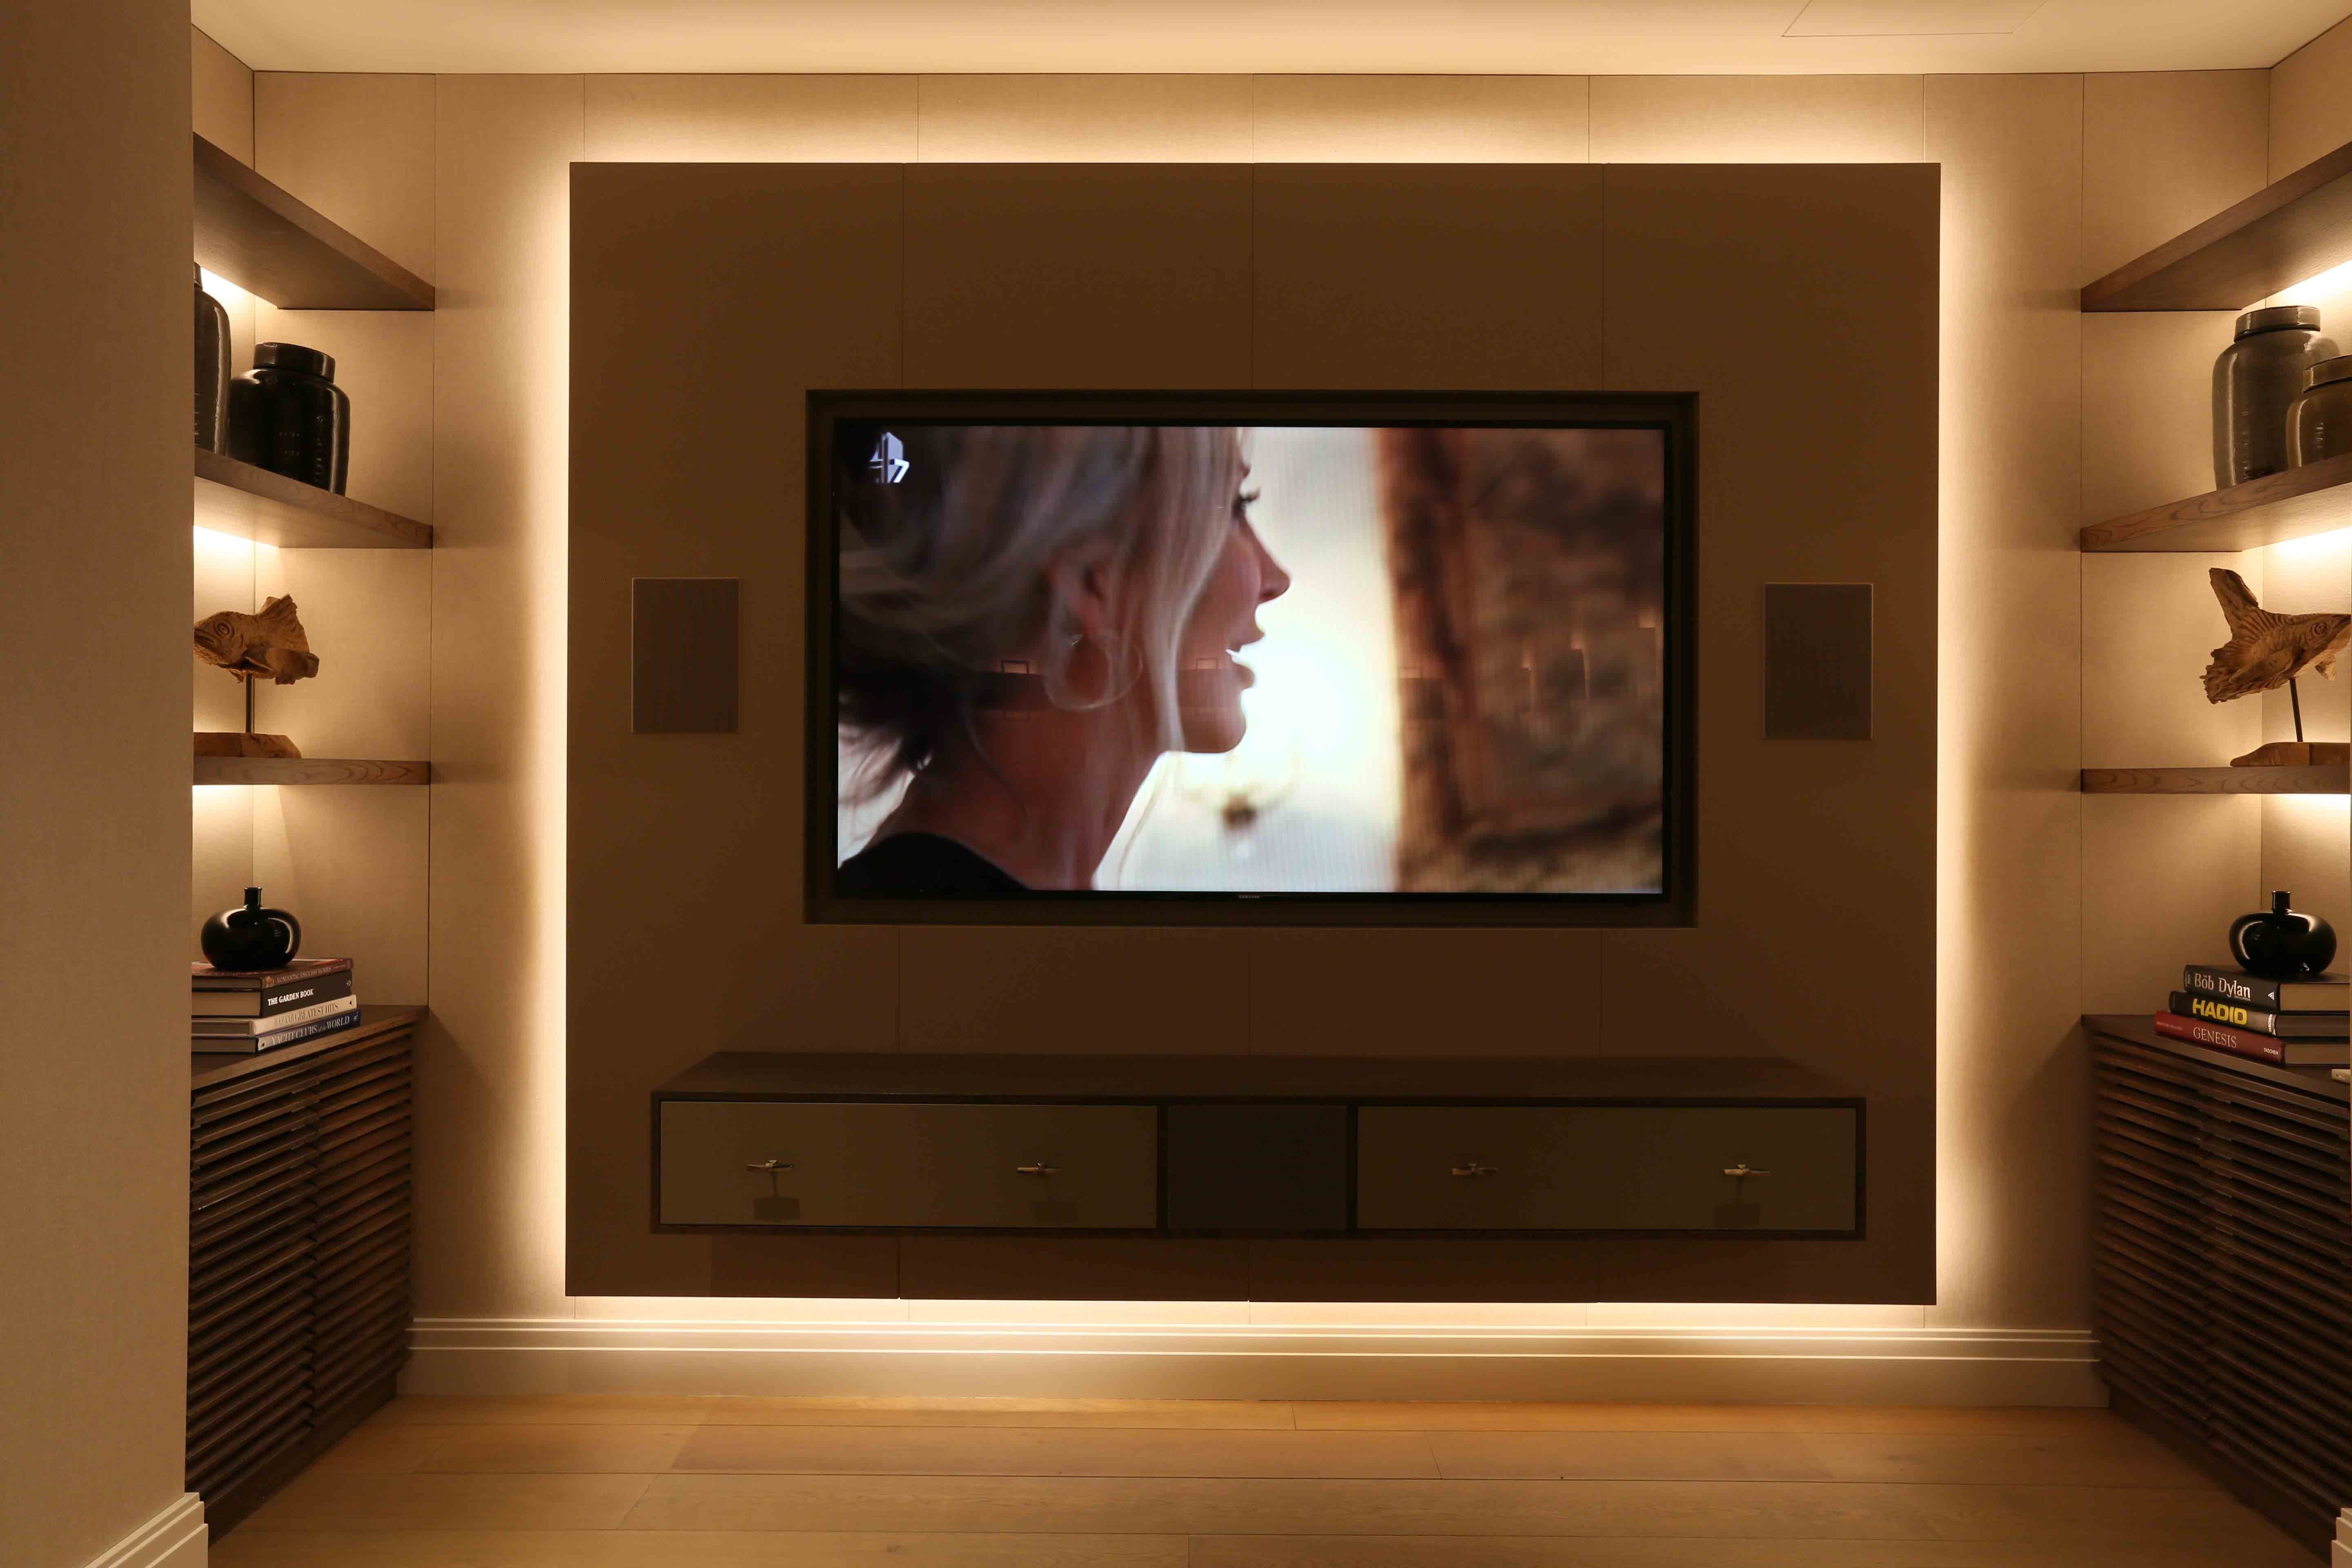 Встроенные каналы в телевизоре. Подсветка стены с телевизором. Телевизор встроенный в стену. Ниша с подсветкой для телевизора. Подсветка вокруг телевизора.